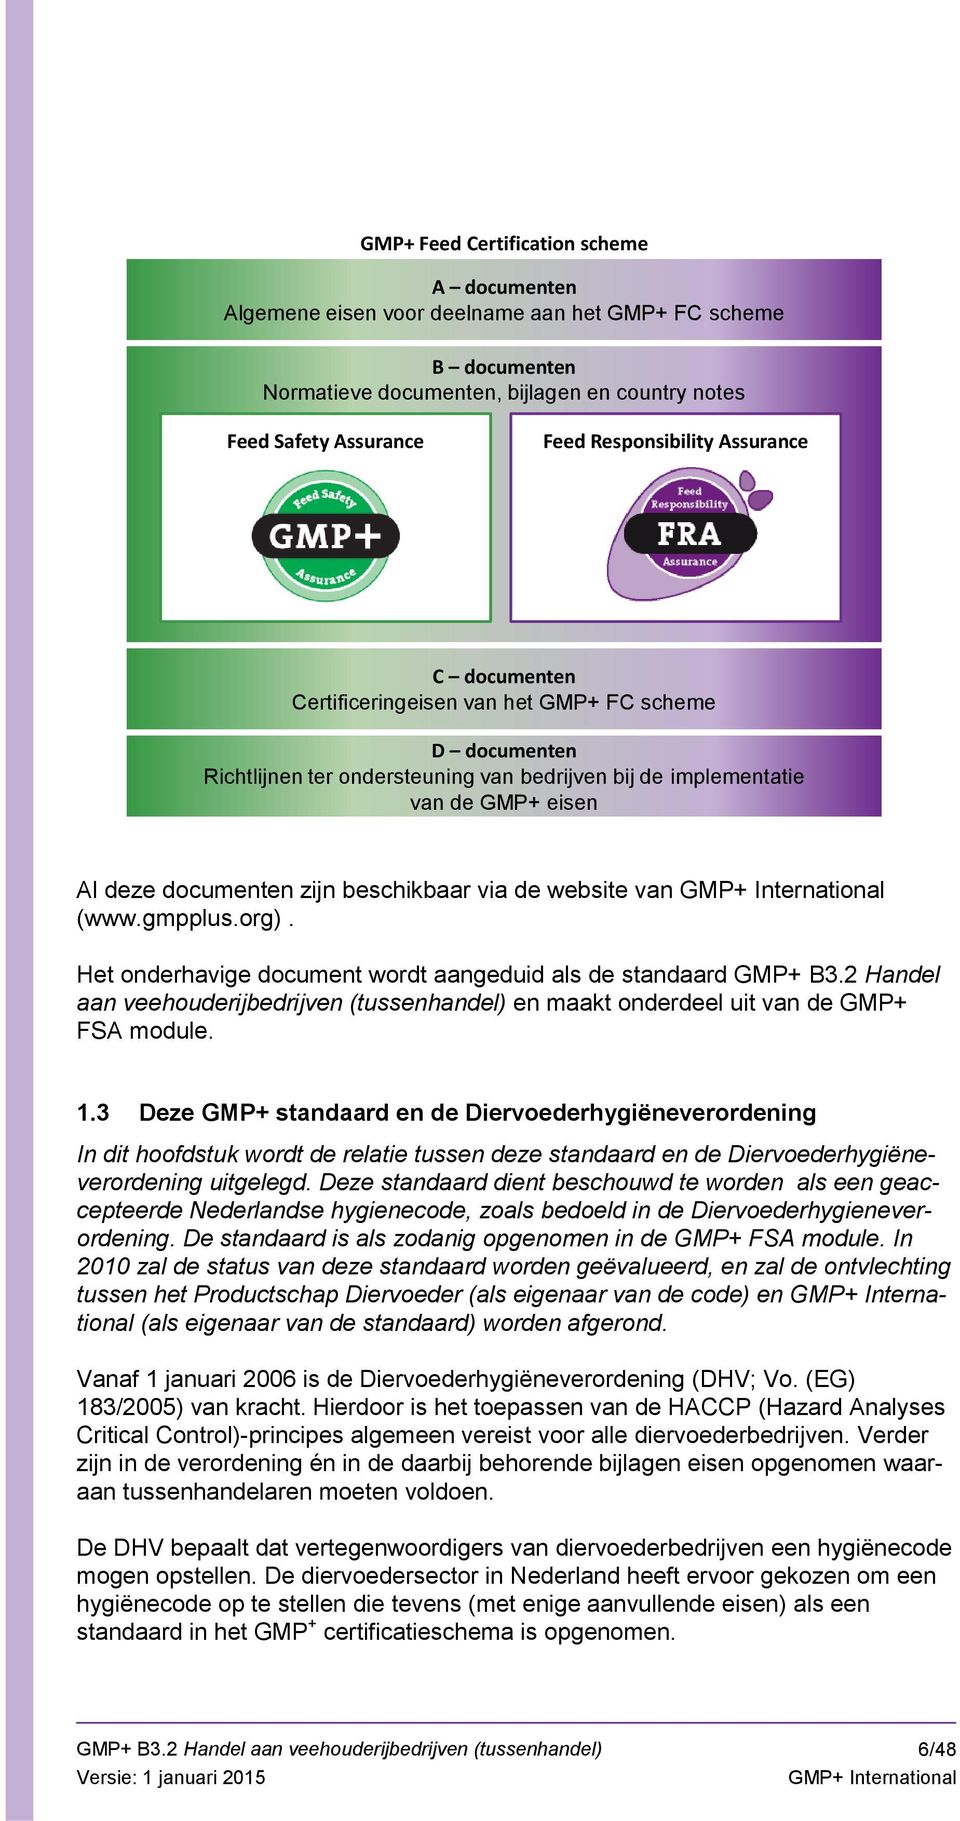 via de website van (www.gmpplus.org). Het onderhavige document wordt aangeduid als de standaard GMP+ B3.2 Handel aan veehouderijbedrijven (tussenhandel) en maakt onderdeel uit van de GMP+ FSA module.